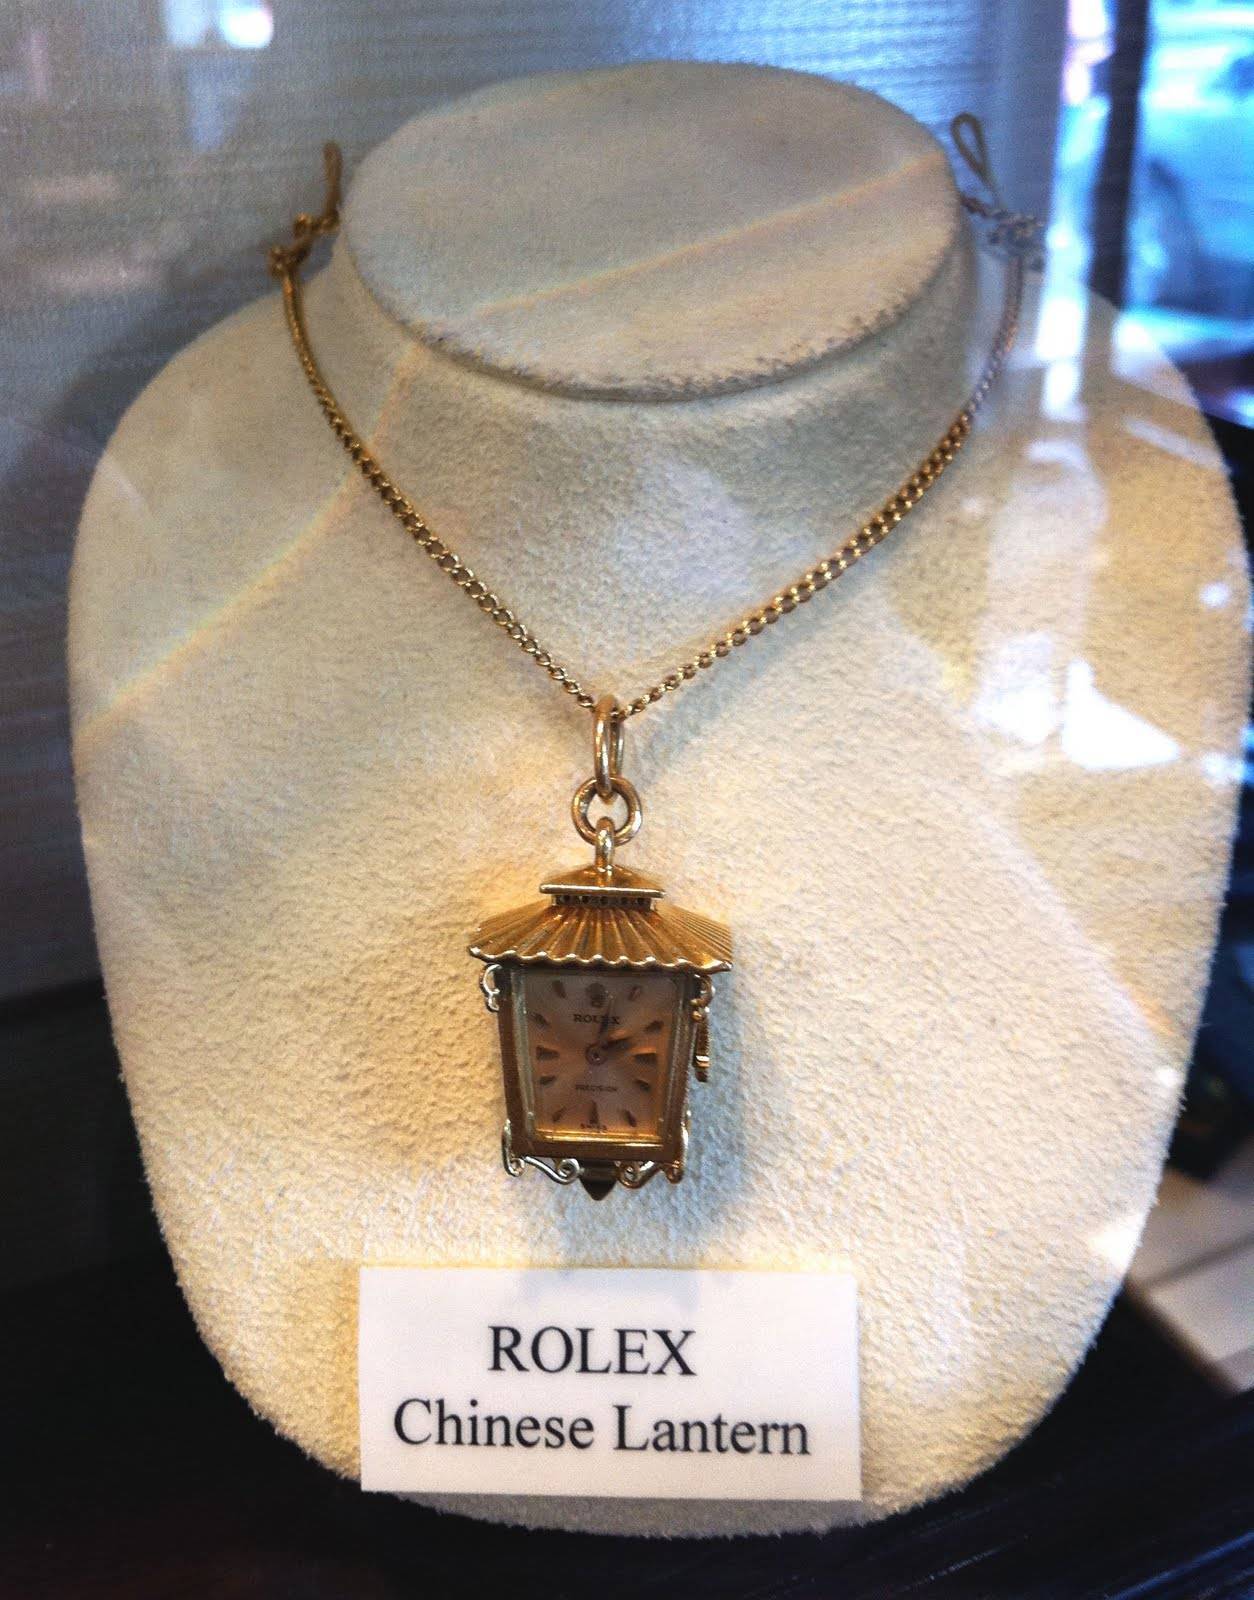 Rolex-Chinese-Lantern-Necklace.jpg